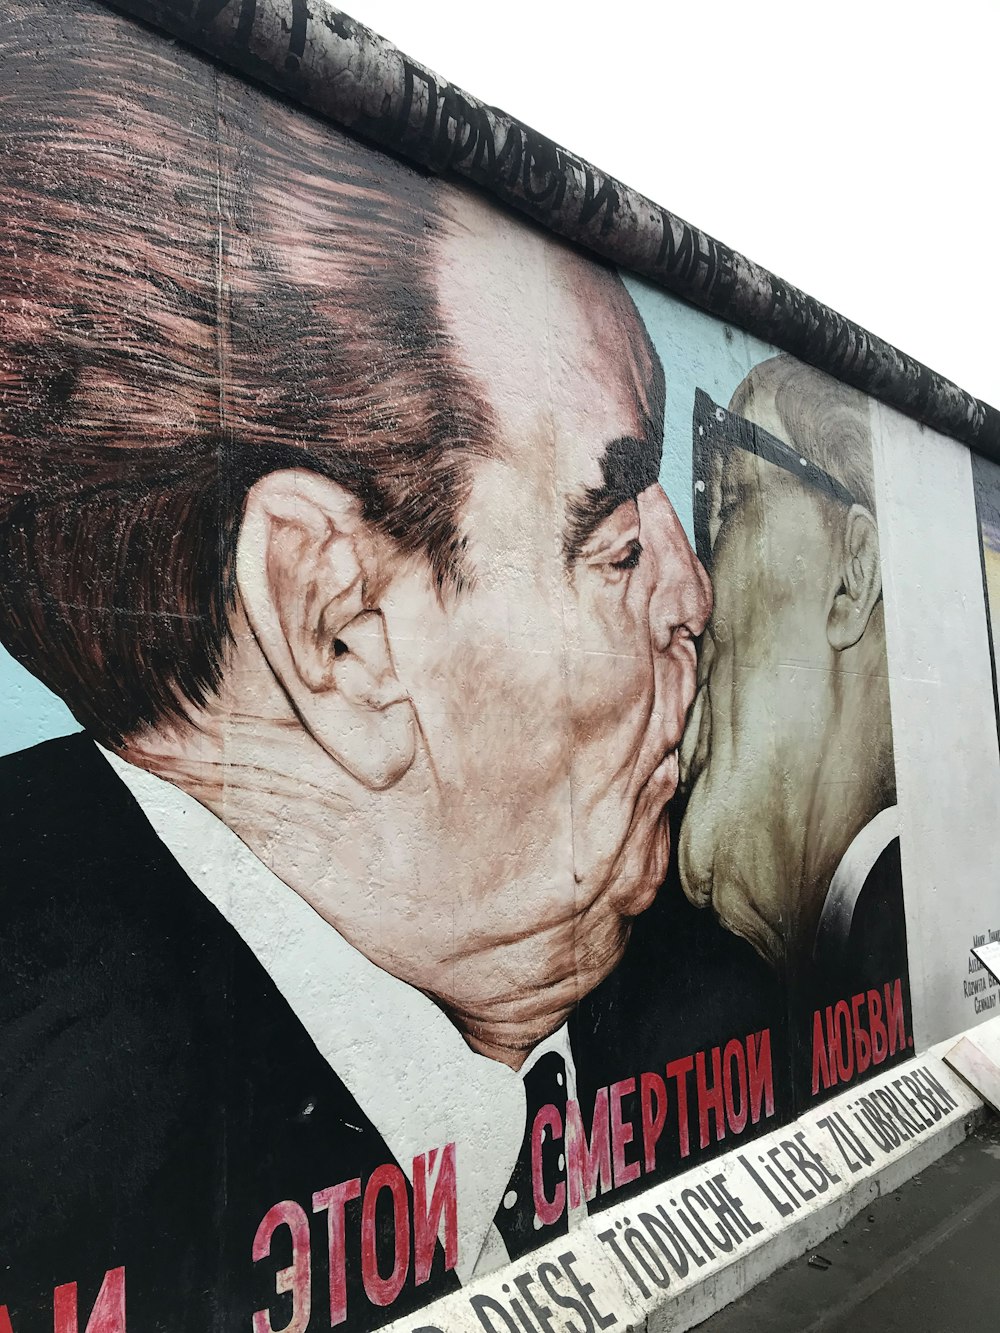 Un grande murale di un uomo che bacia un altro uomo